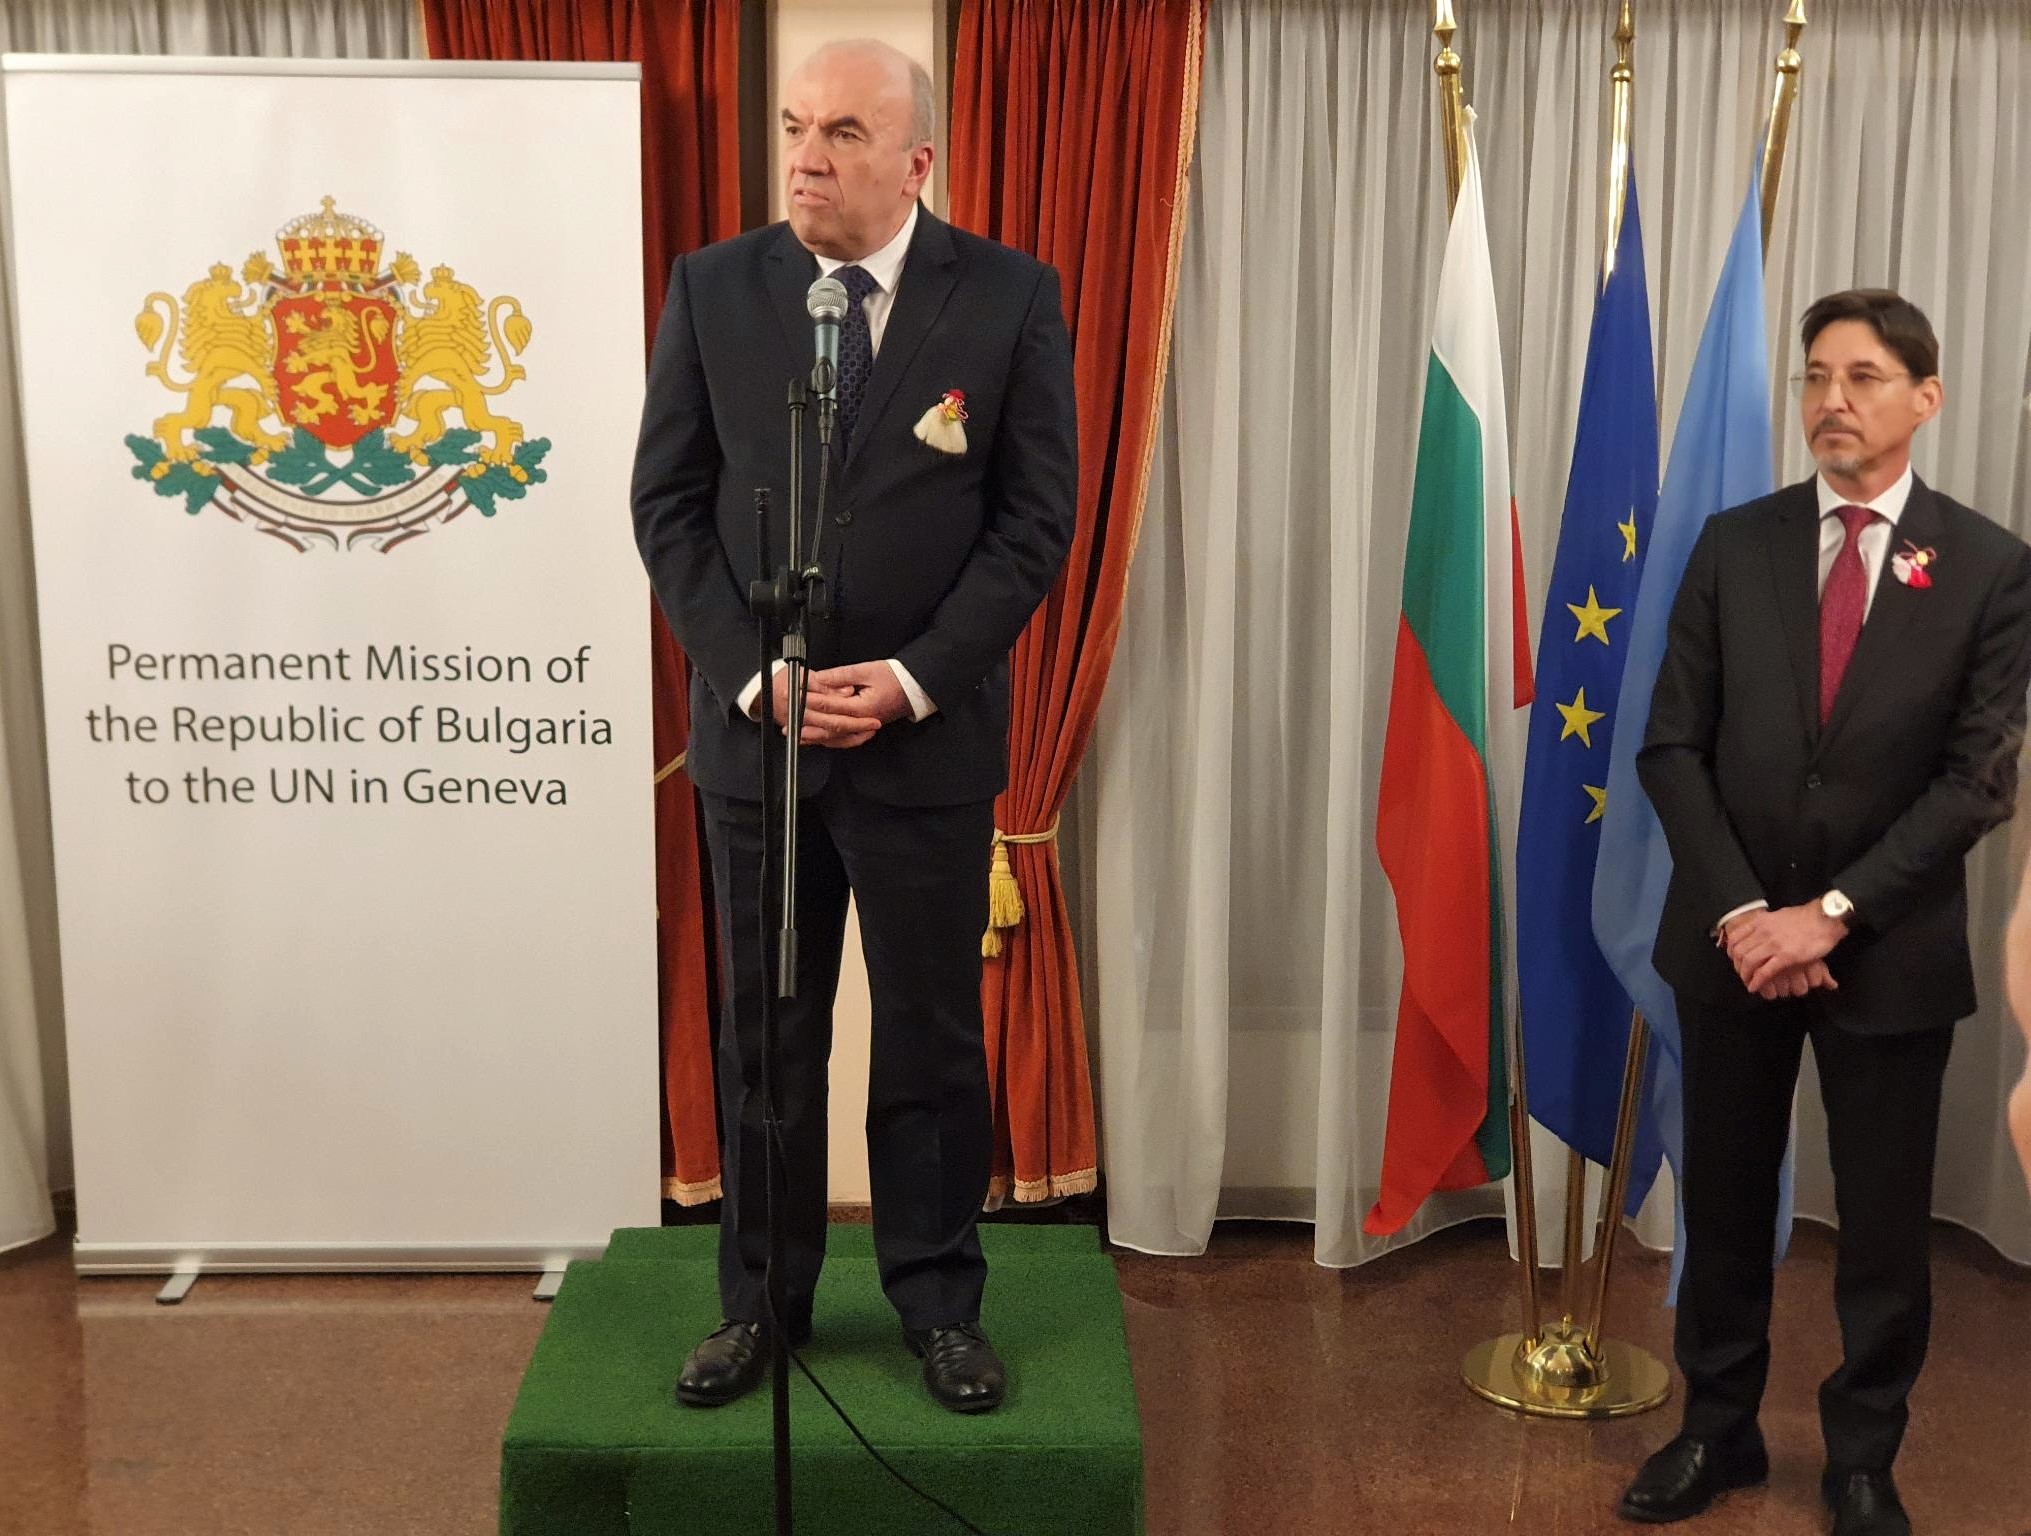 Министър Николай Милков приветства гостите на прием по повод Националния празник на Република България – 3 март, организиран от Постоянното представителство на Република България в Женева